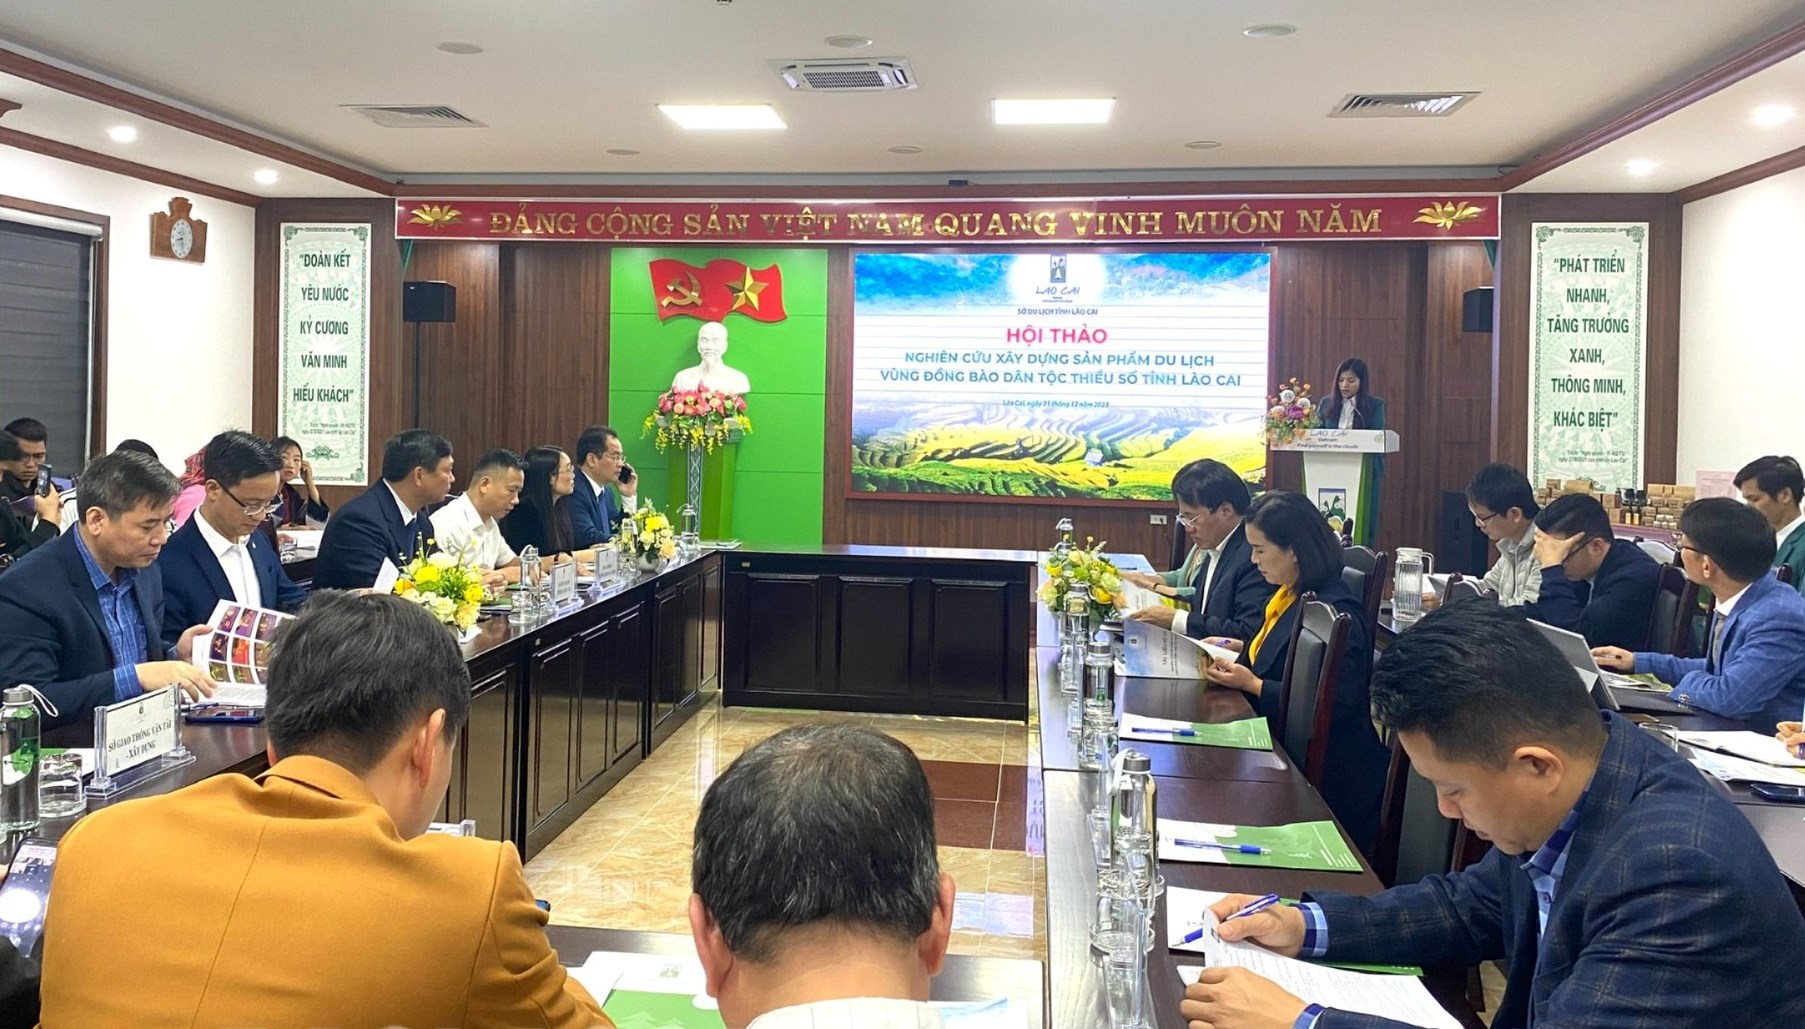 Hội thảo nghiên cứu xây dựng sản phẩm du lịch vùng đồng bào dân tộc thiểu số tỉnh Lào Cai